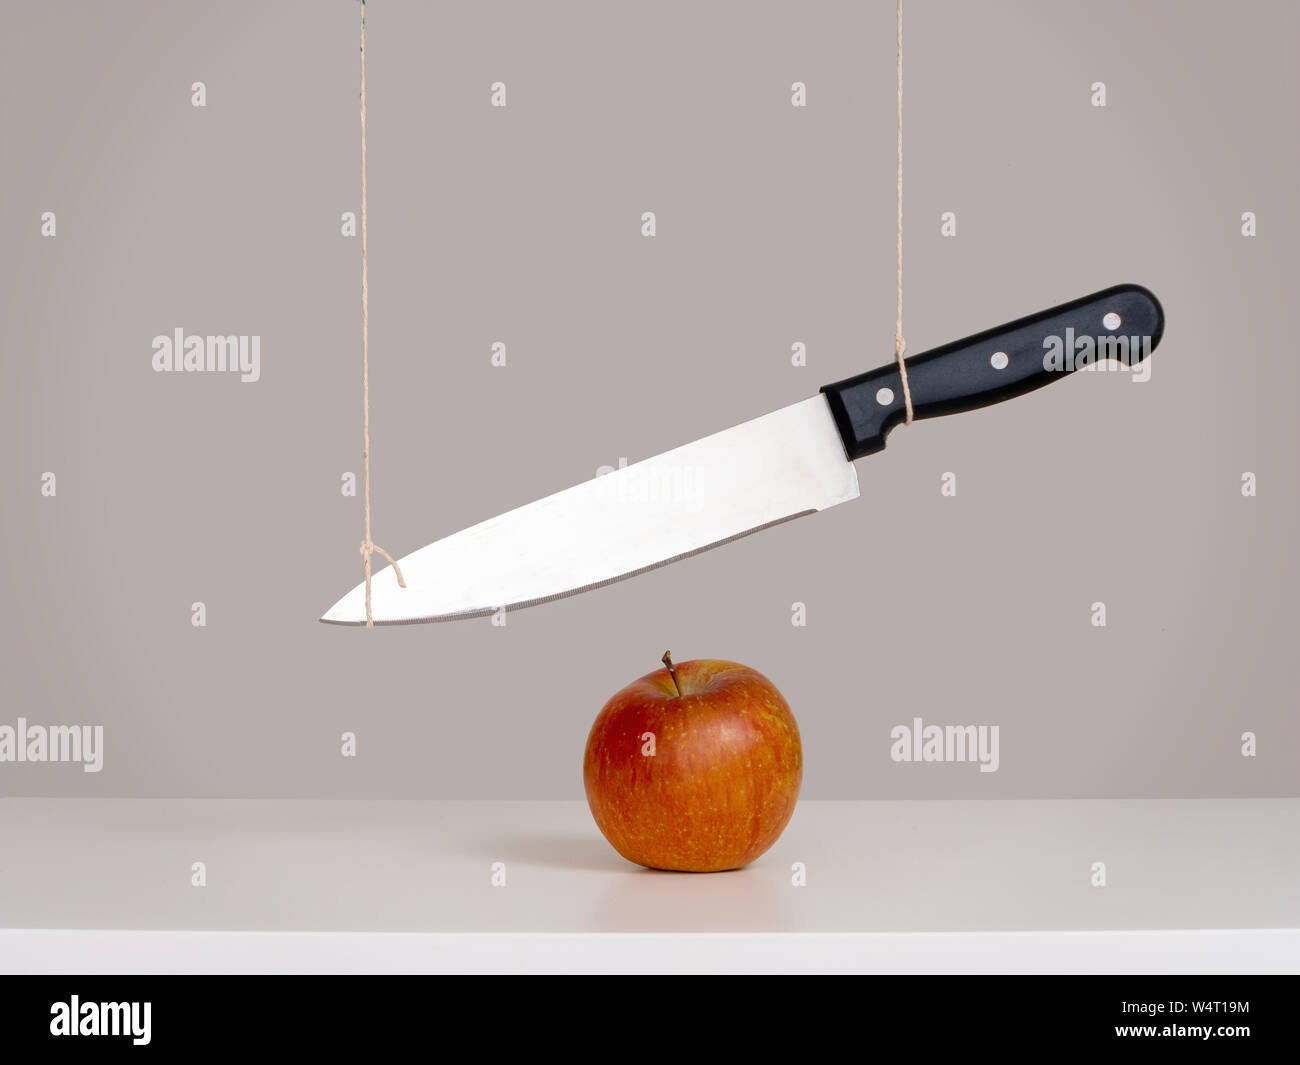 Spada di damocle minaccia, il concetto di rischio, metafora - grande coltello legato e sospeso su apple. Ancora in vita. Foto Stock